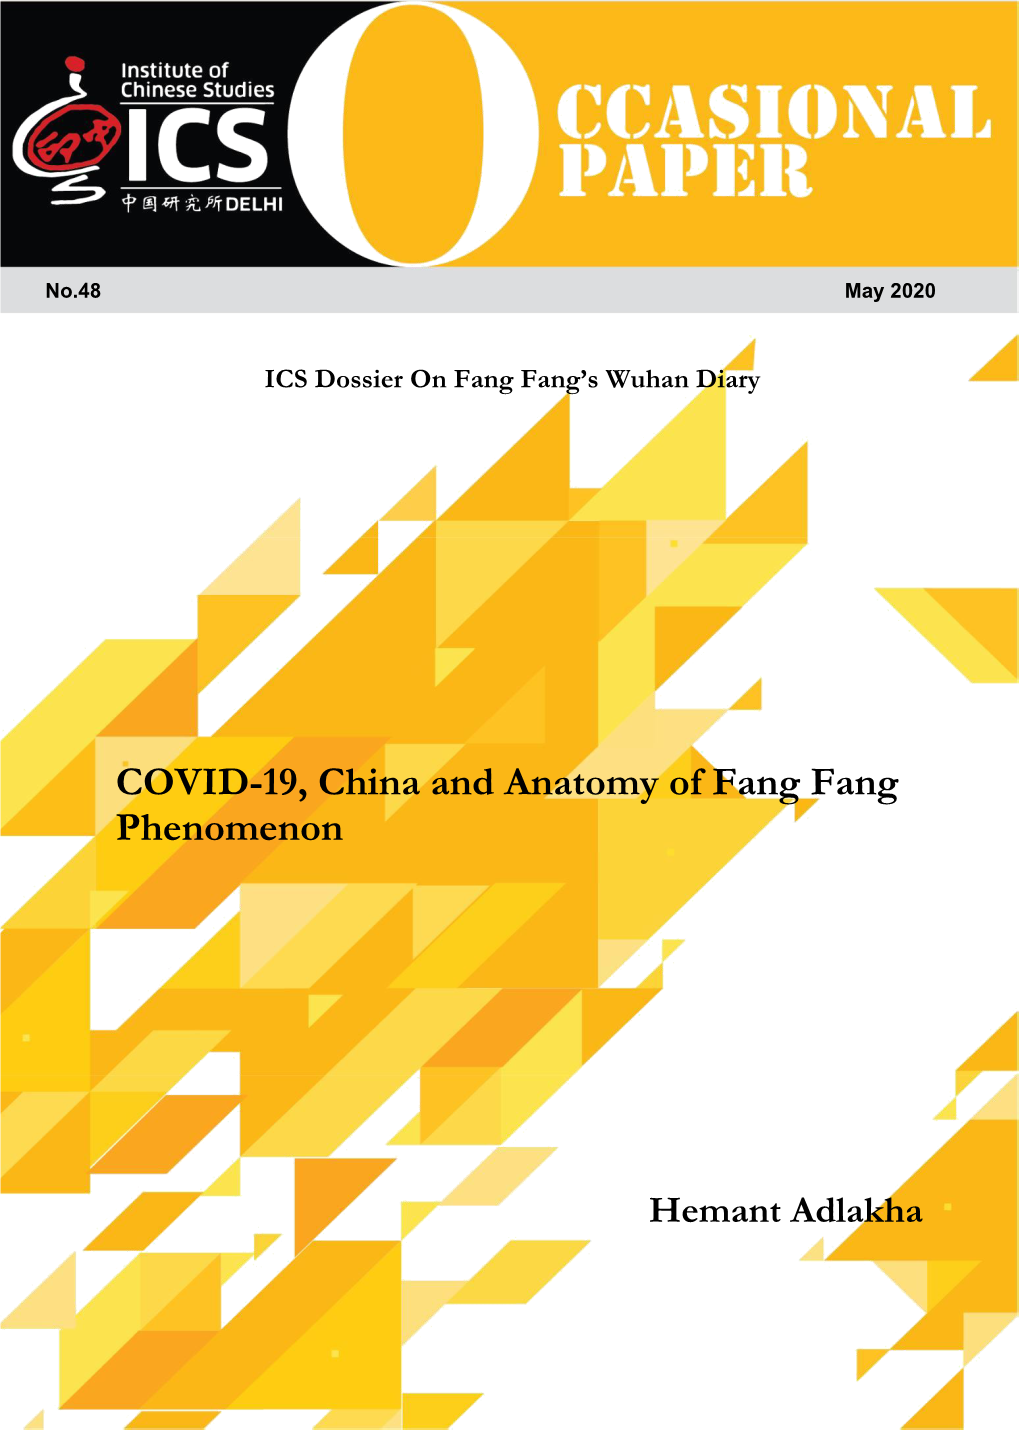 COVID-19, China and Anatomy of Fang Fang Phenomenon